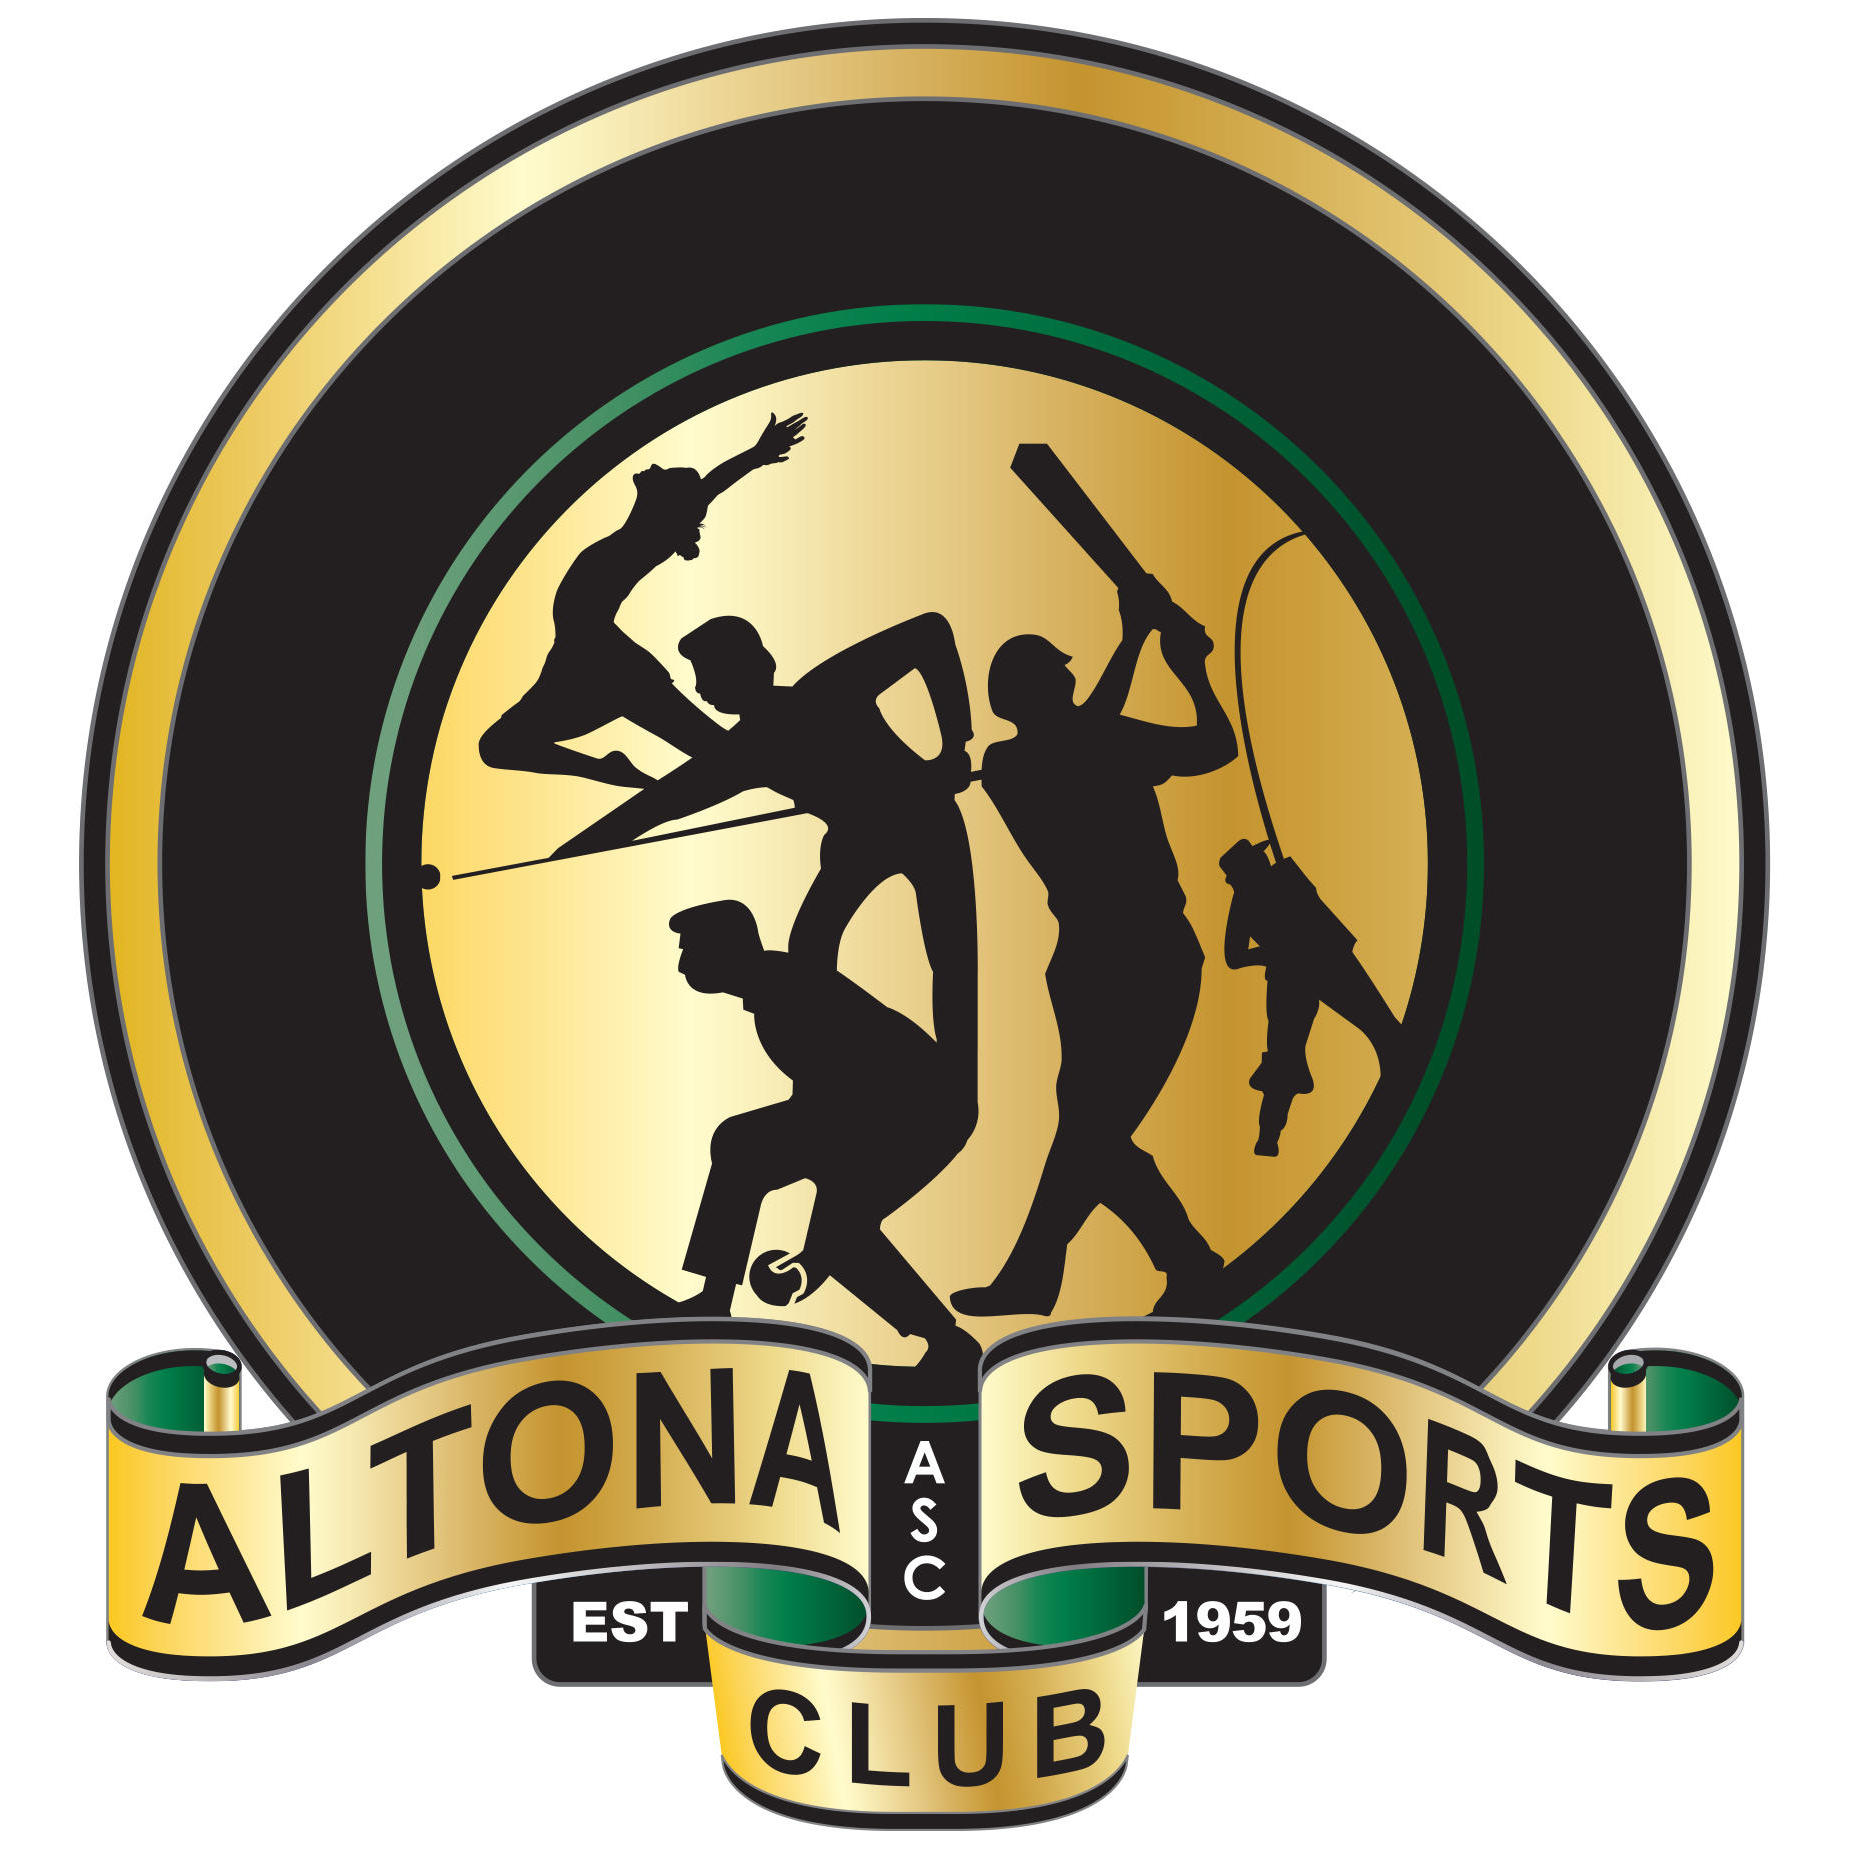 Altona Sports Club - Seaholme, VIC 3018 - (03) 9398 2283 | ShowMeLocal.com